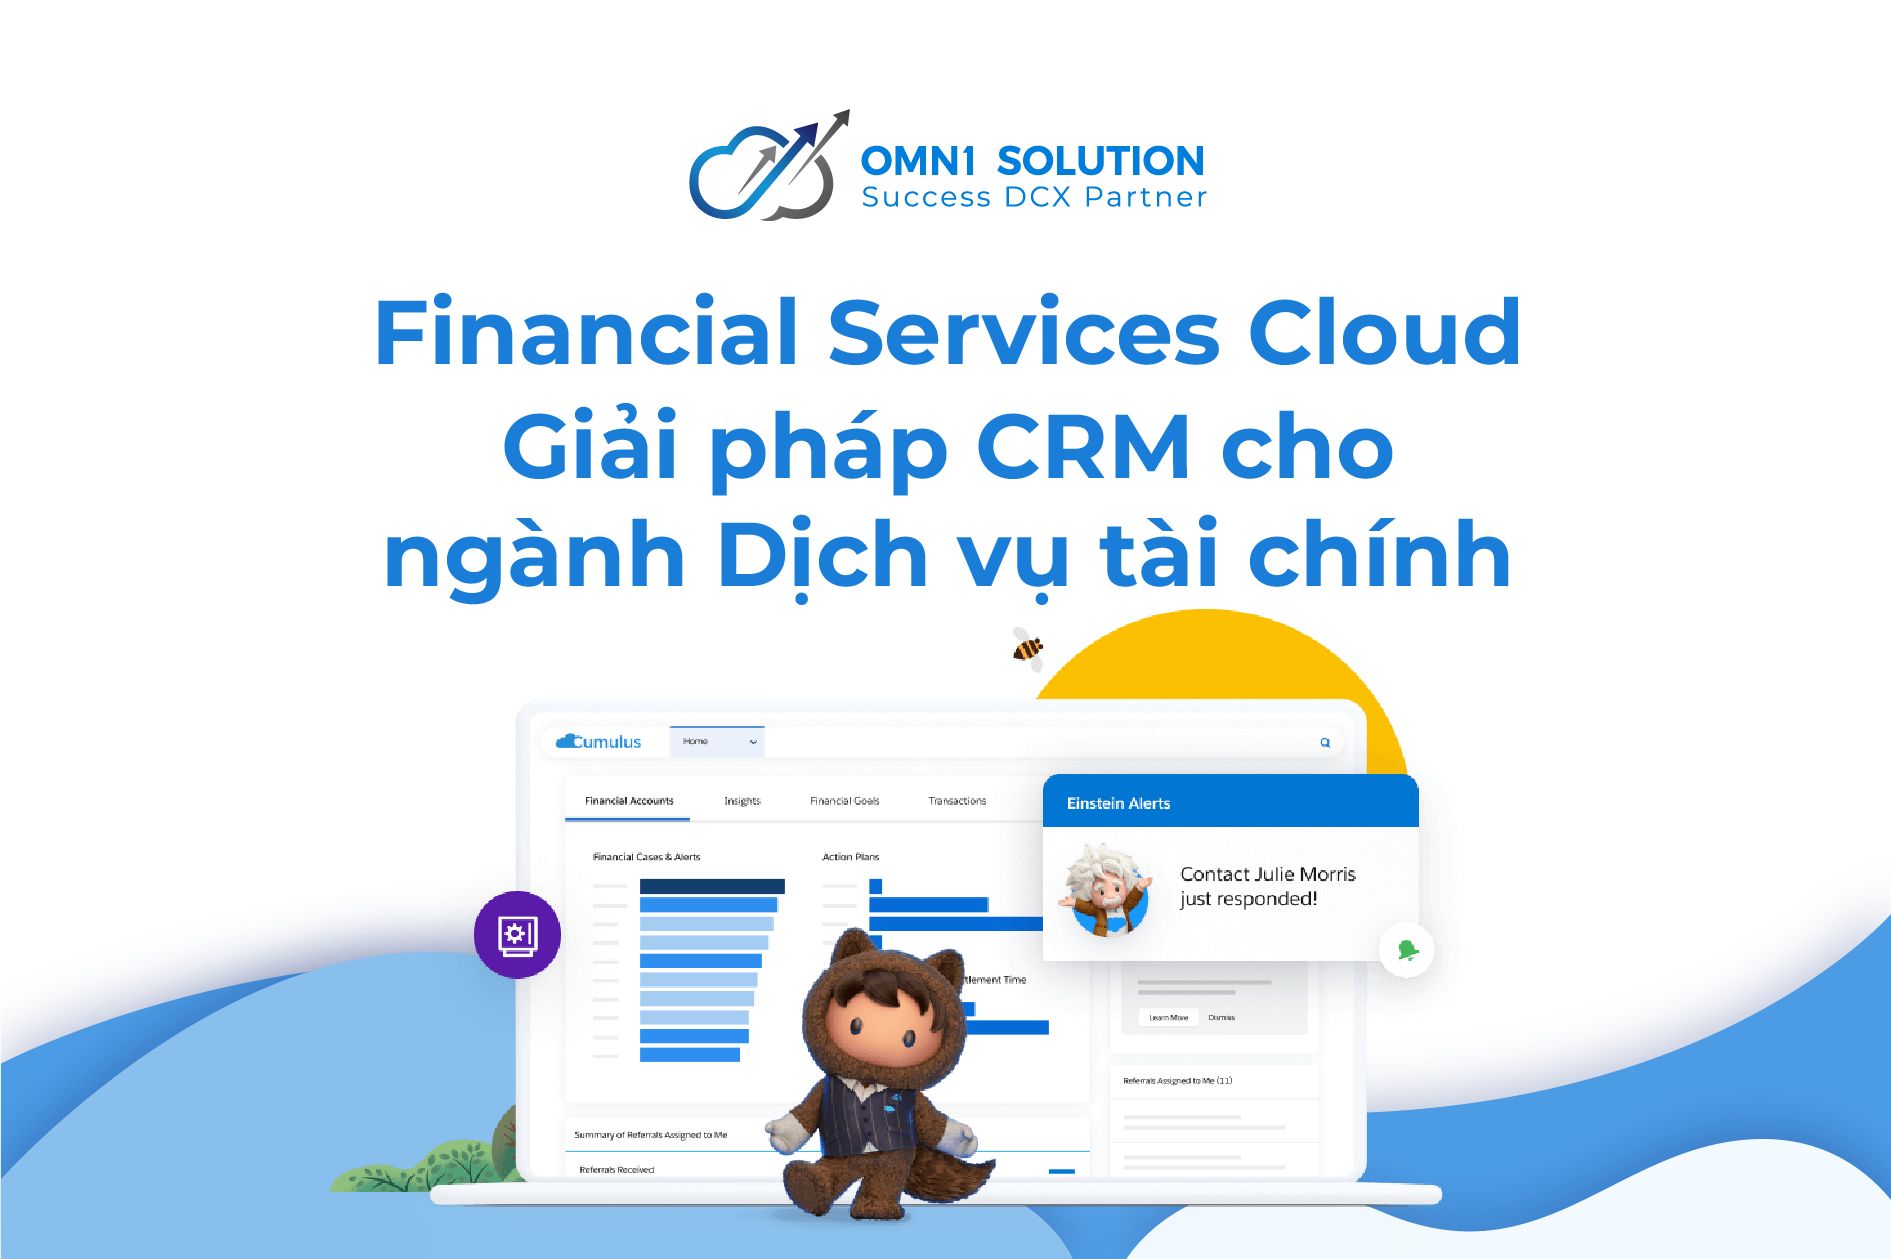 Salesforce Financial Services Cloud - Giải pháp CRM cho ngành Dịch vụ tài chính